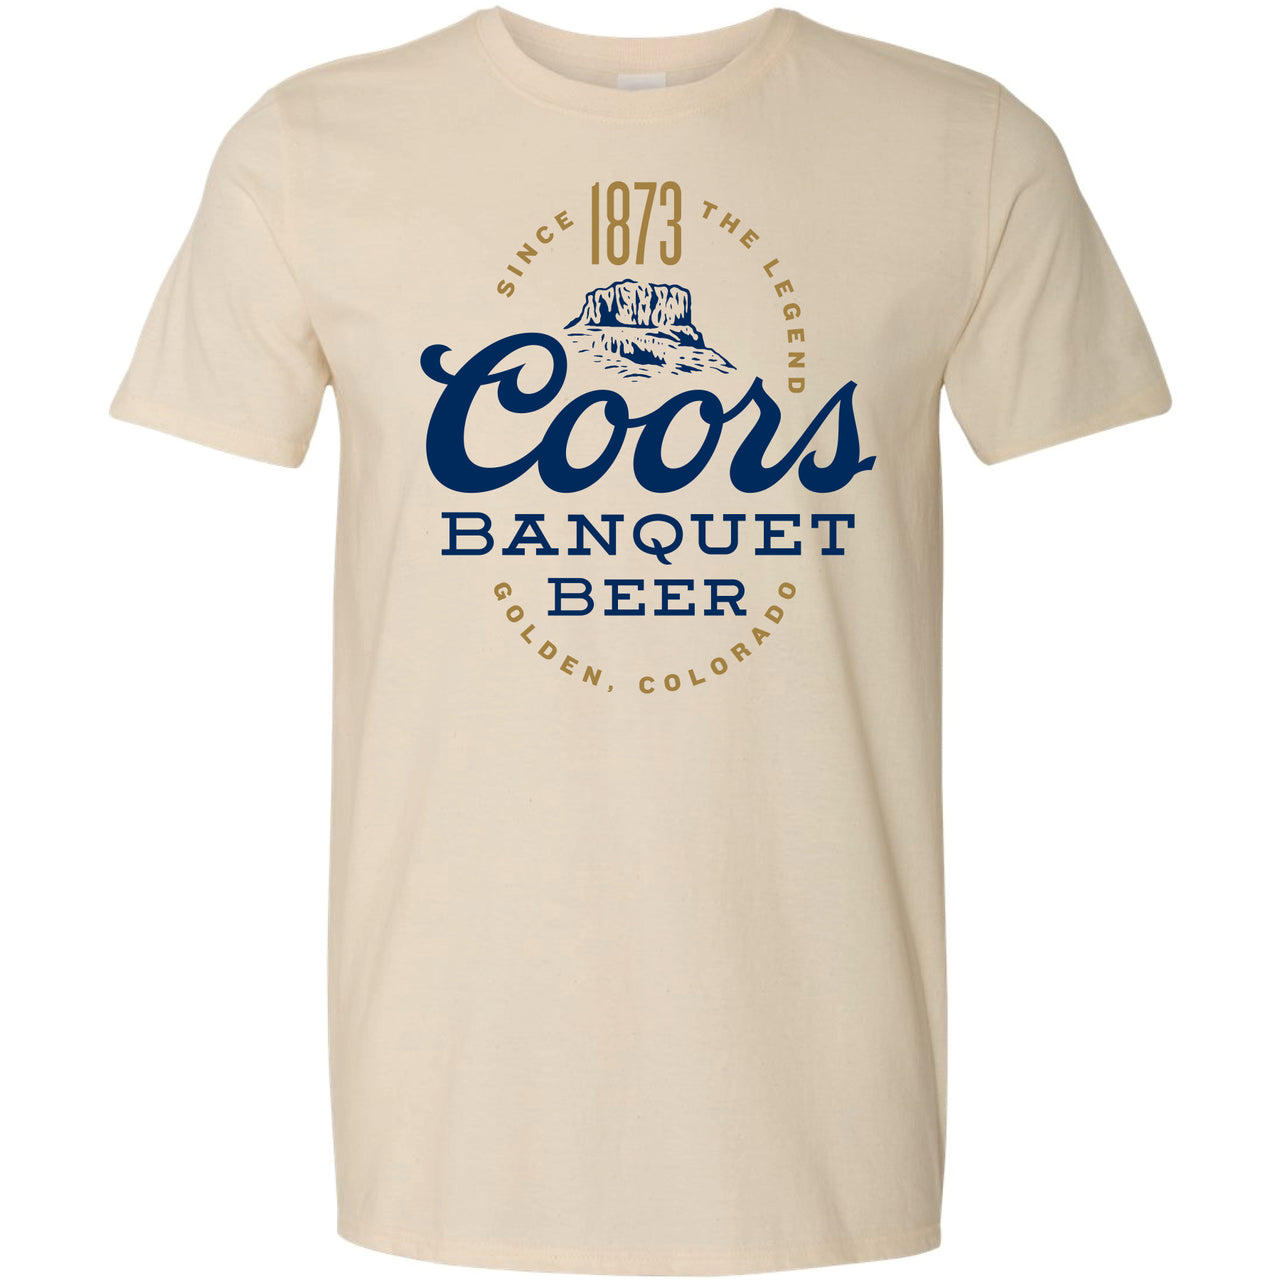 Coors Banquet 1873 Oval T-Shirt